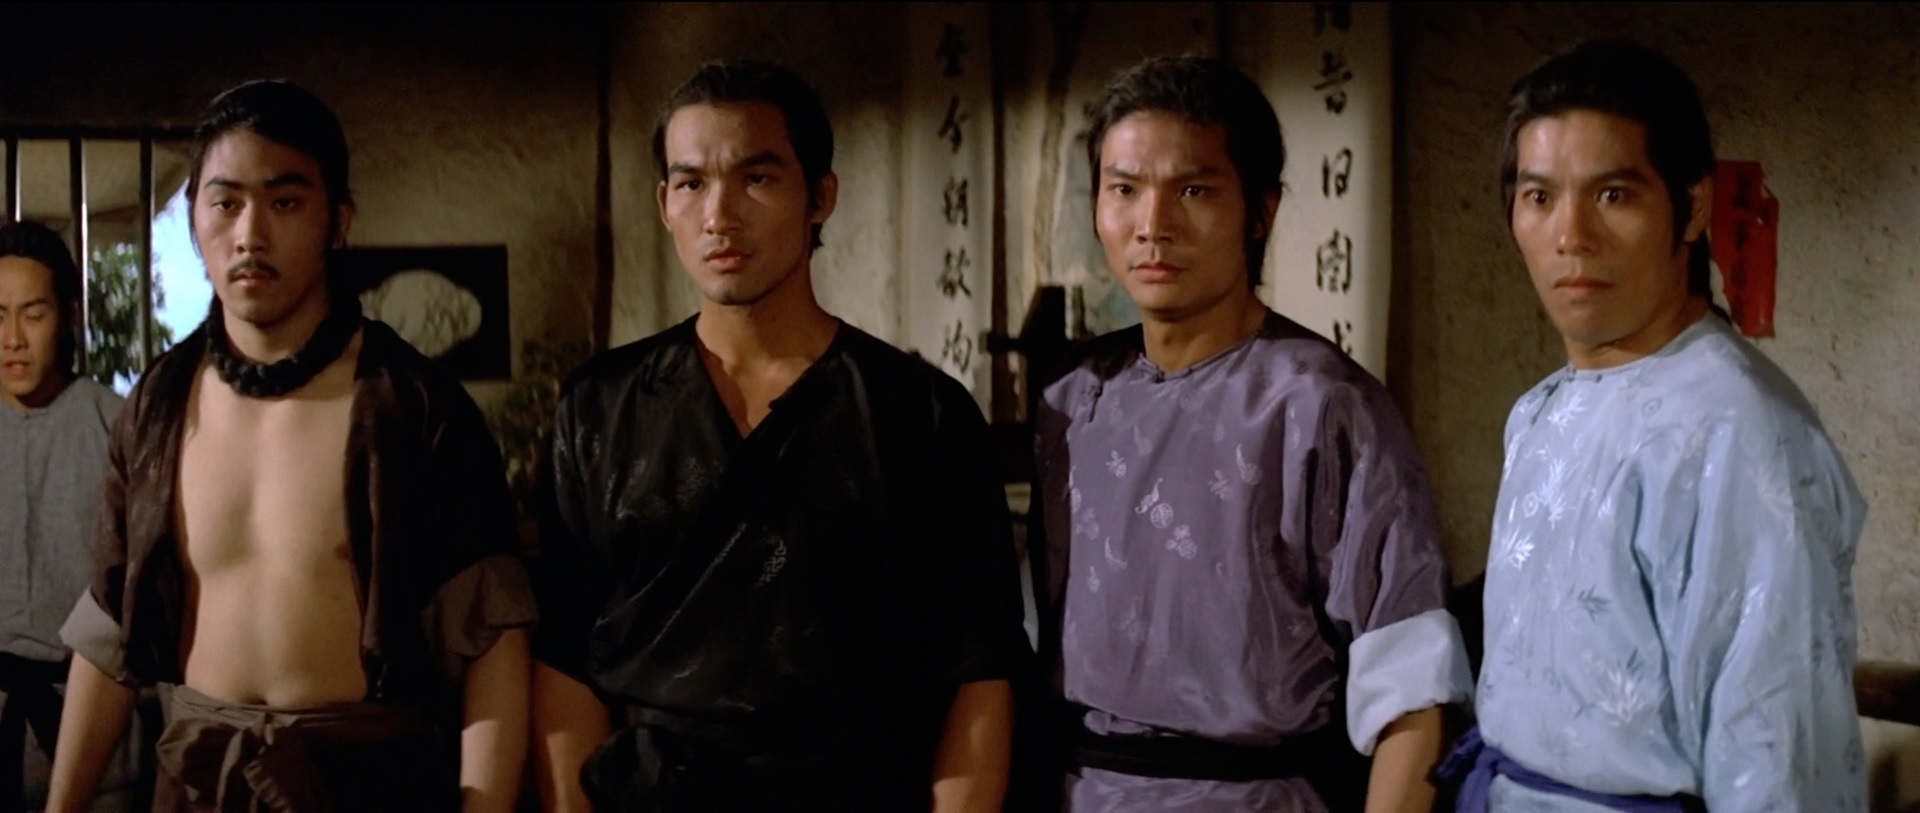 Shaolin Martial Arts (1974) « Silver Emulsion Film Reviews